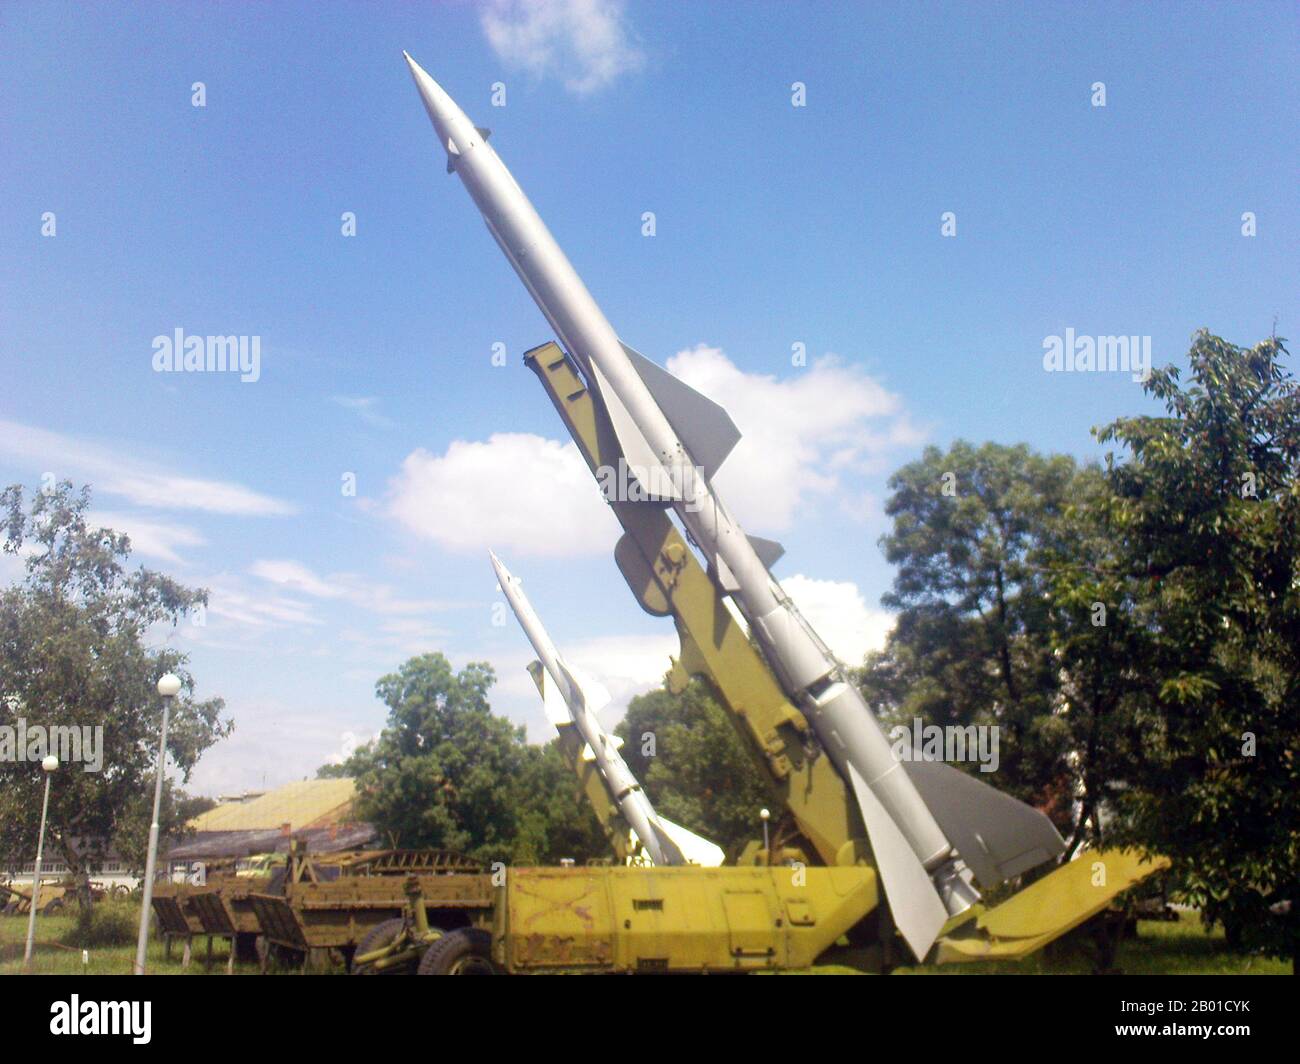 Bulgarien/UdSSR/Vietnam: Zwei SA-2-Guideline-Raketen (S-75 Dvina) im Nationalmuseum für Militärgeschichte in Sofia, Bulgarien, 2008. Foto von Tourbillon (CC BY 3,0 License). Die S-75 Dvina (russisch: С-75; NATO-Berichtsname SA-2 Guideline) ist ein von der Sowjetunion konstruiertes, hoch gelegenes, befehlsgesteuertes Boden-Luft-Raketen-System (SAM). Seit ihrem ersten Einsatz im Jahr 1957 ist sie die am weitesten verbreitete und am häufigsten eingesetzte Luftabwehrrakete in der Geschichte. Nordvietnamesische Streitkräfte nutzten die S-75 während des Vietnamkrieges ausgiebig, um Hanoi und Haiphong mit einigen beachtlichen Erfolgen zu verteidigen. Stockfoto